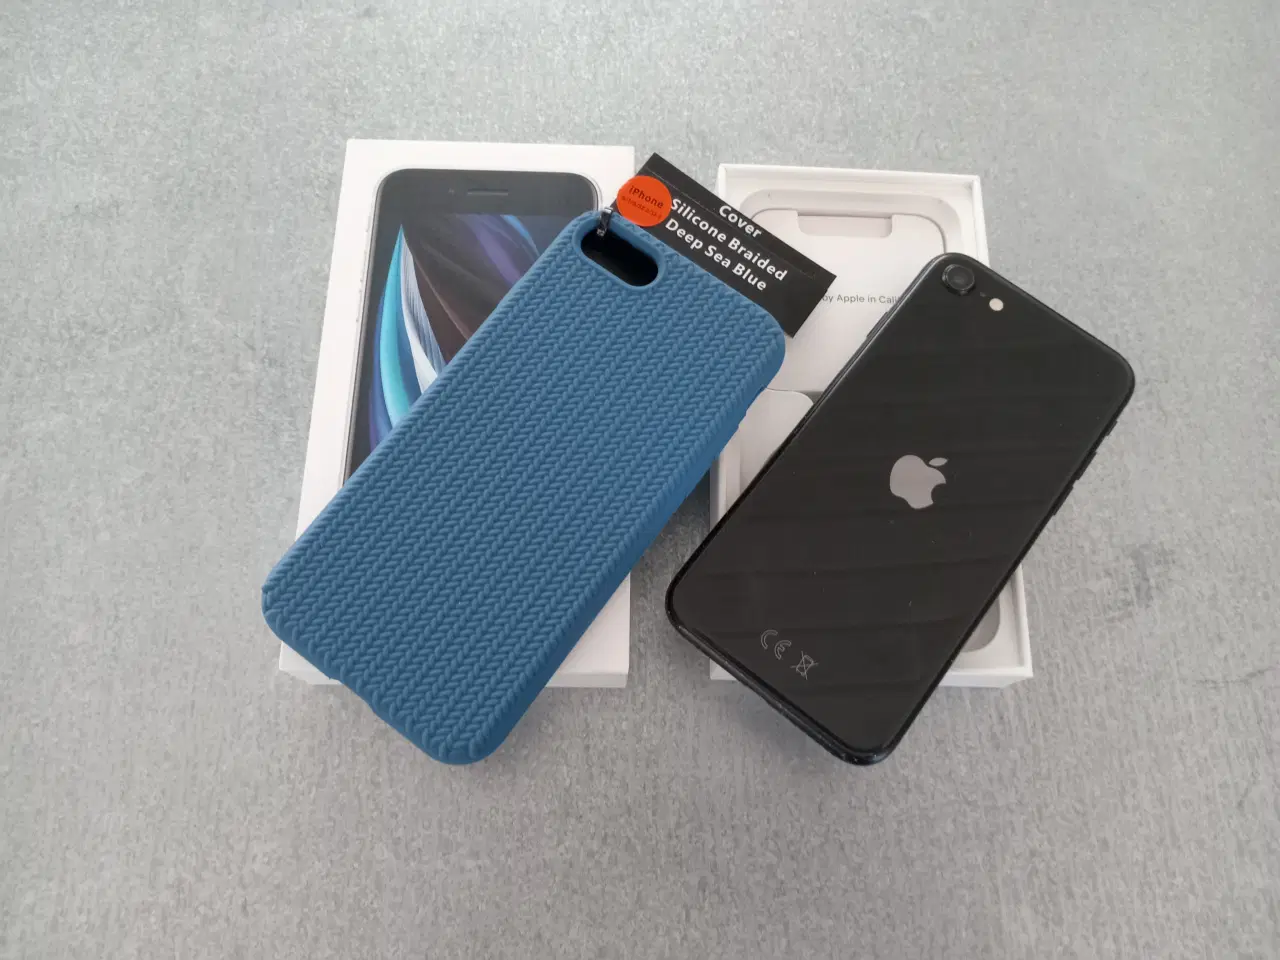 Billede 1 - Flot iPhone SE 2 med godt batteri og nyt cover